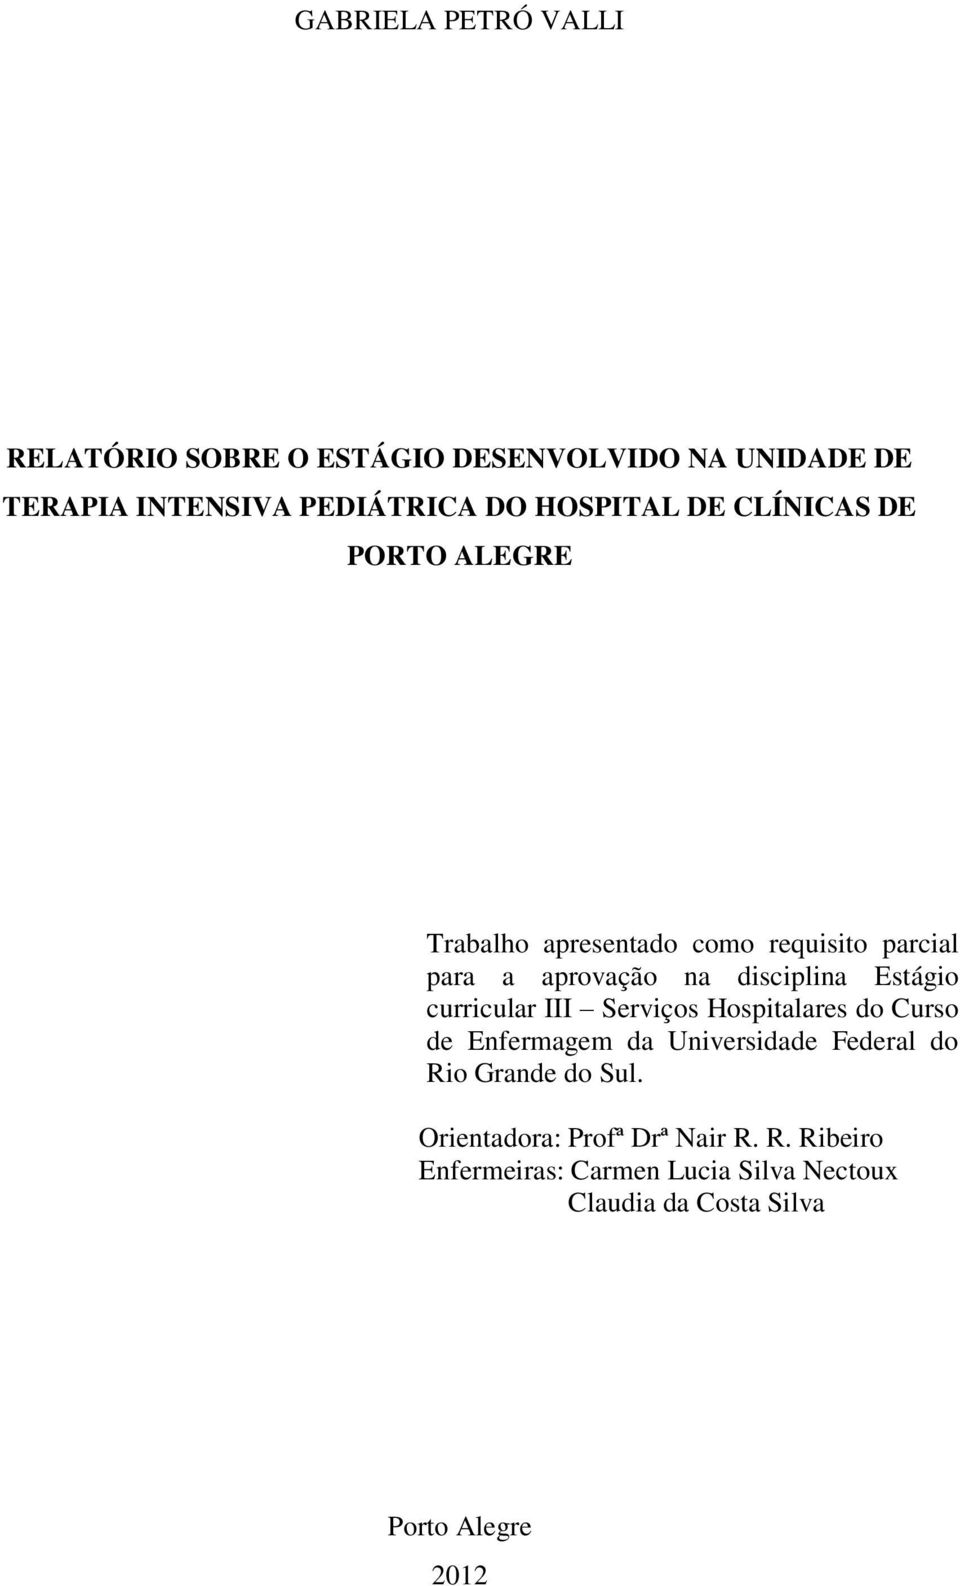 Estágio curricular III Serviços Hospitalares do Curso de Enfermagem da Universidade Federal do Rio Grande do Sul.